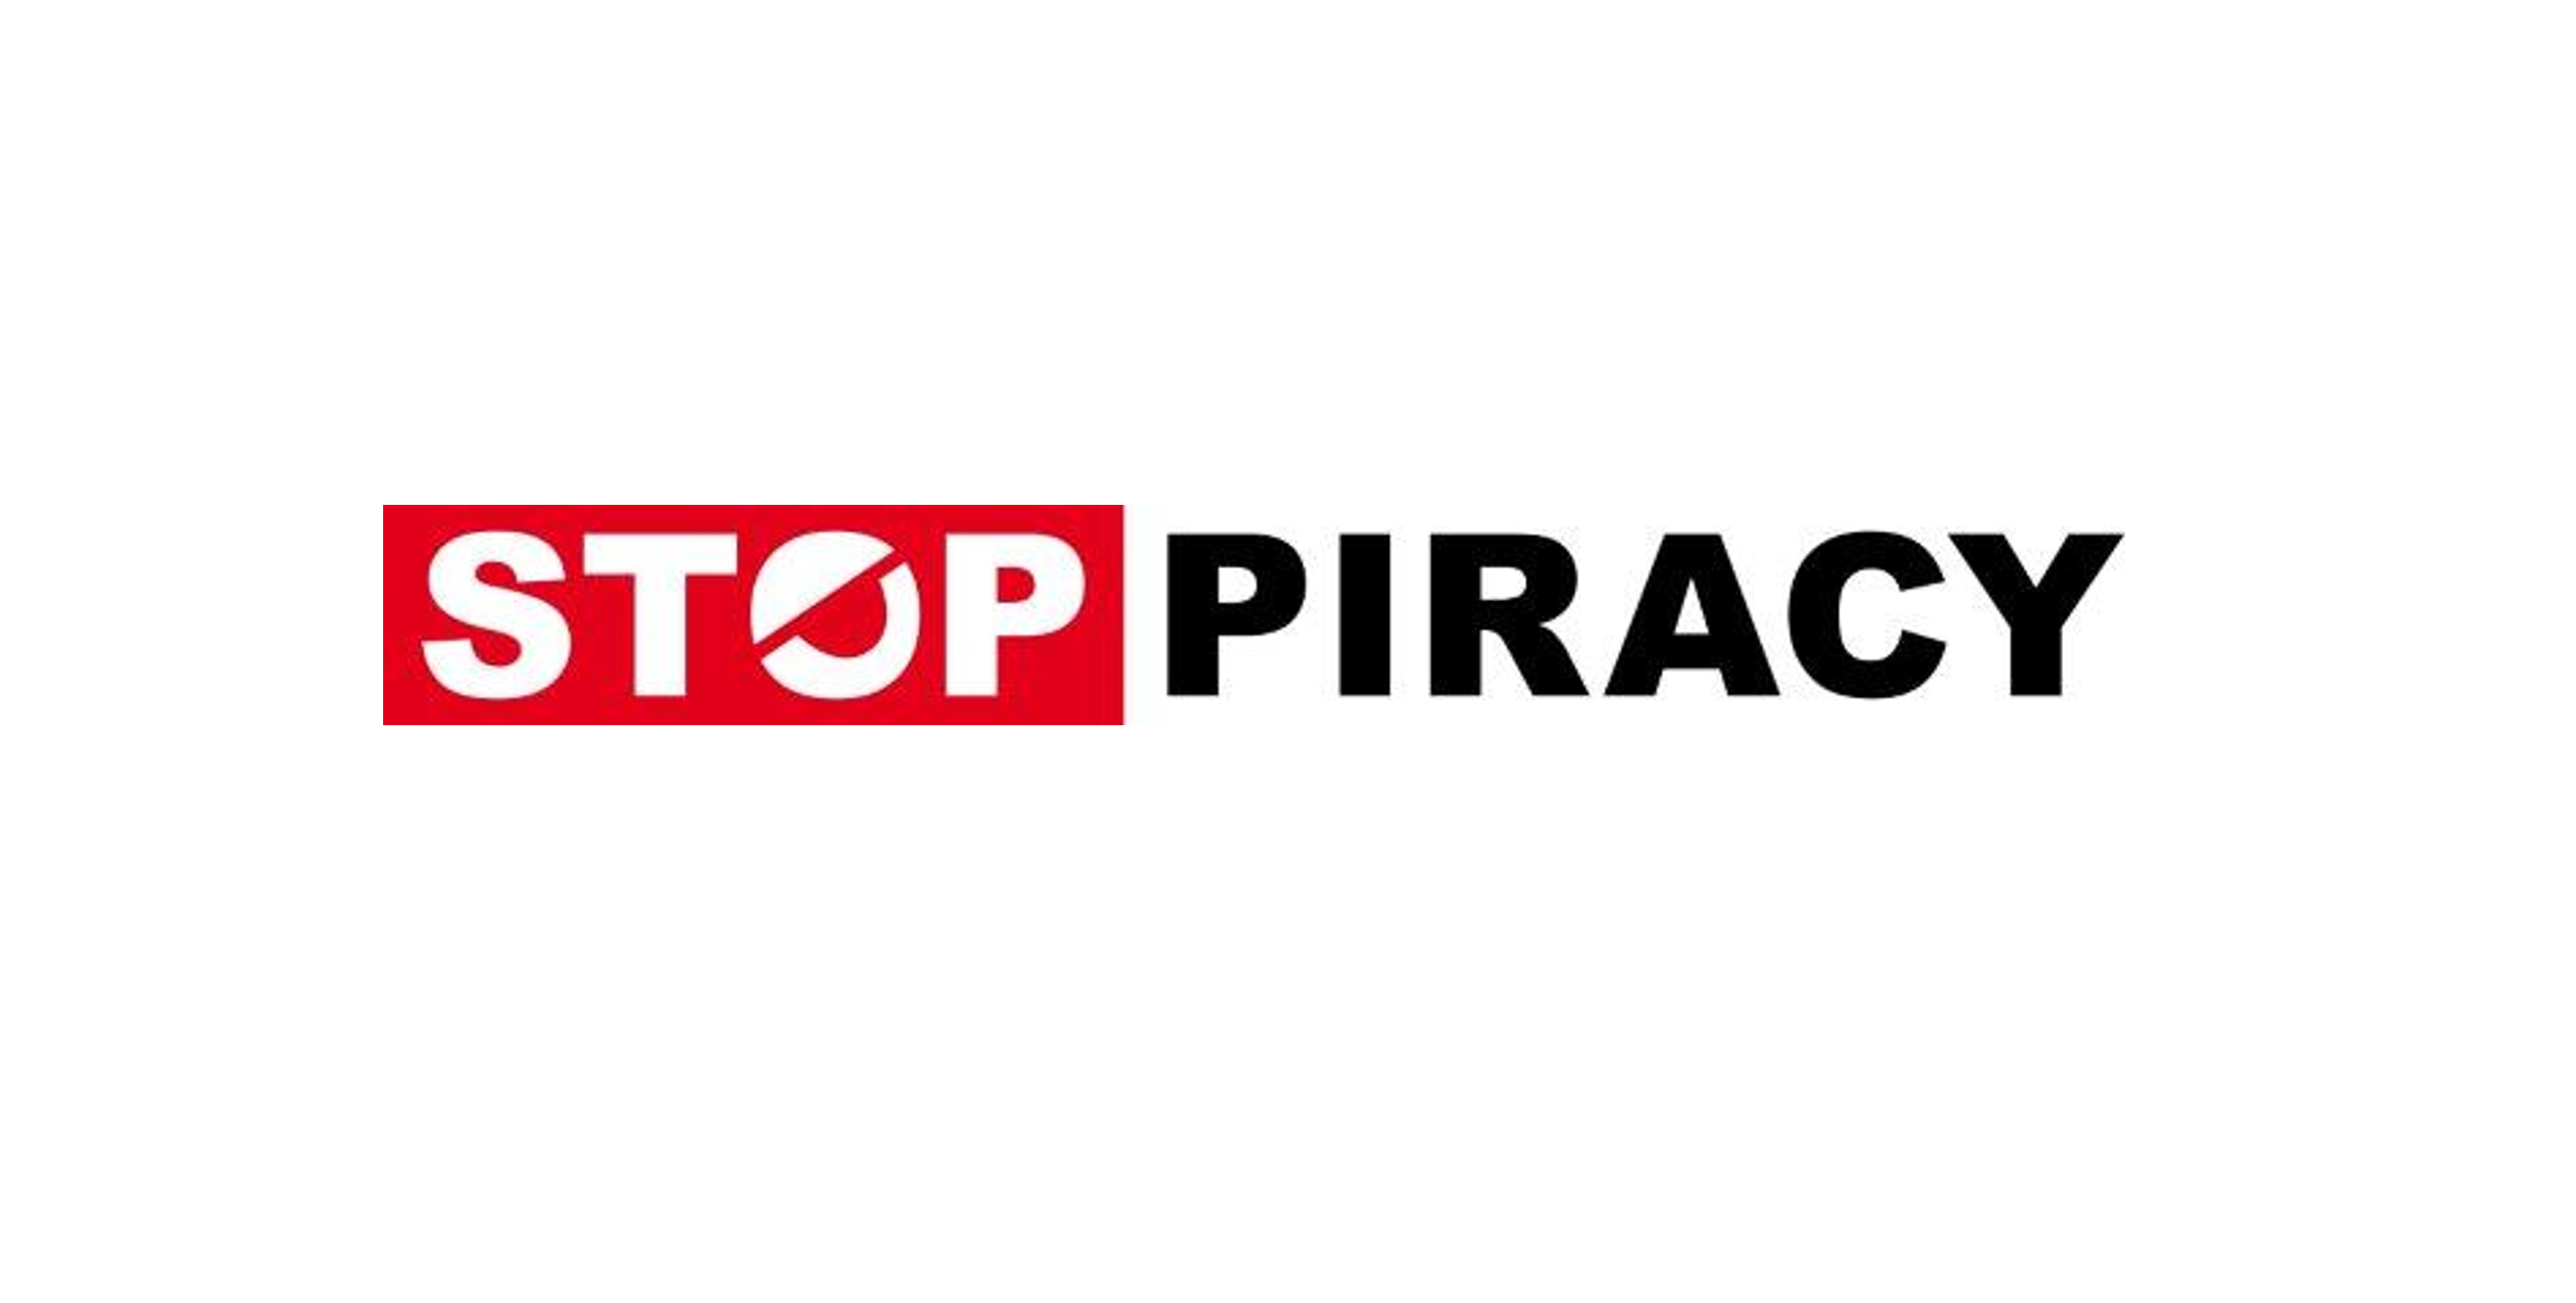 Stop piracy